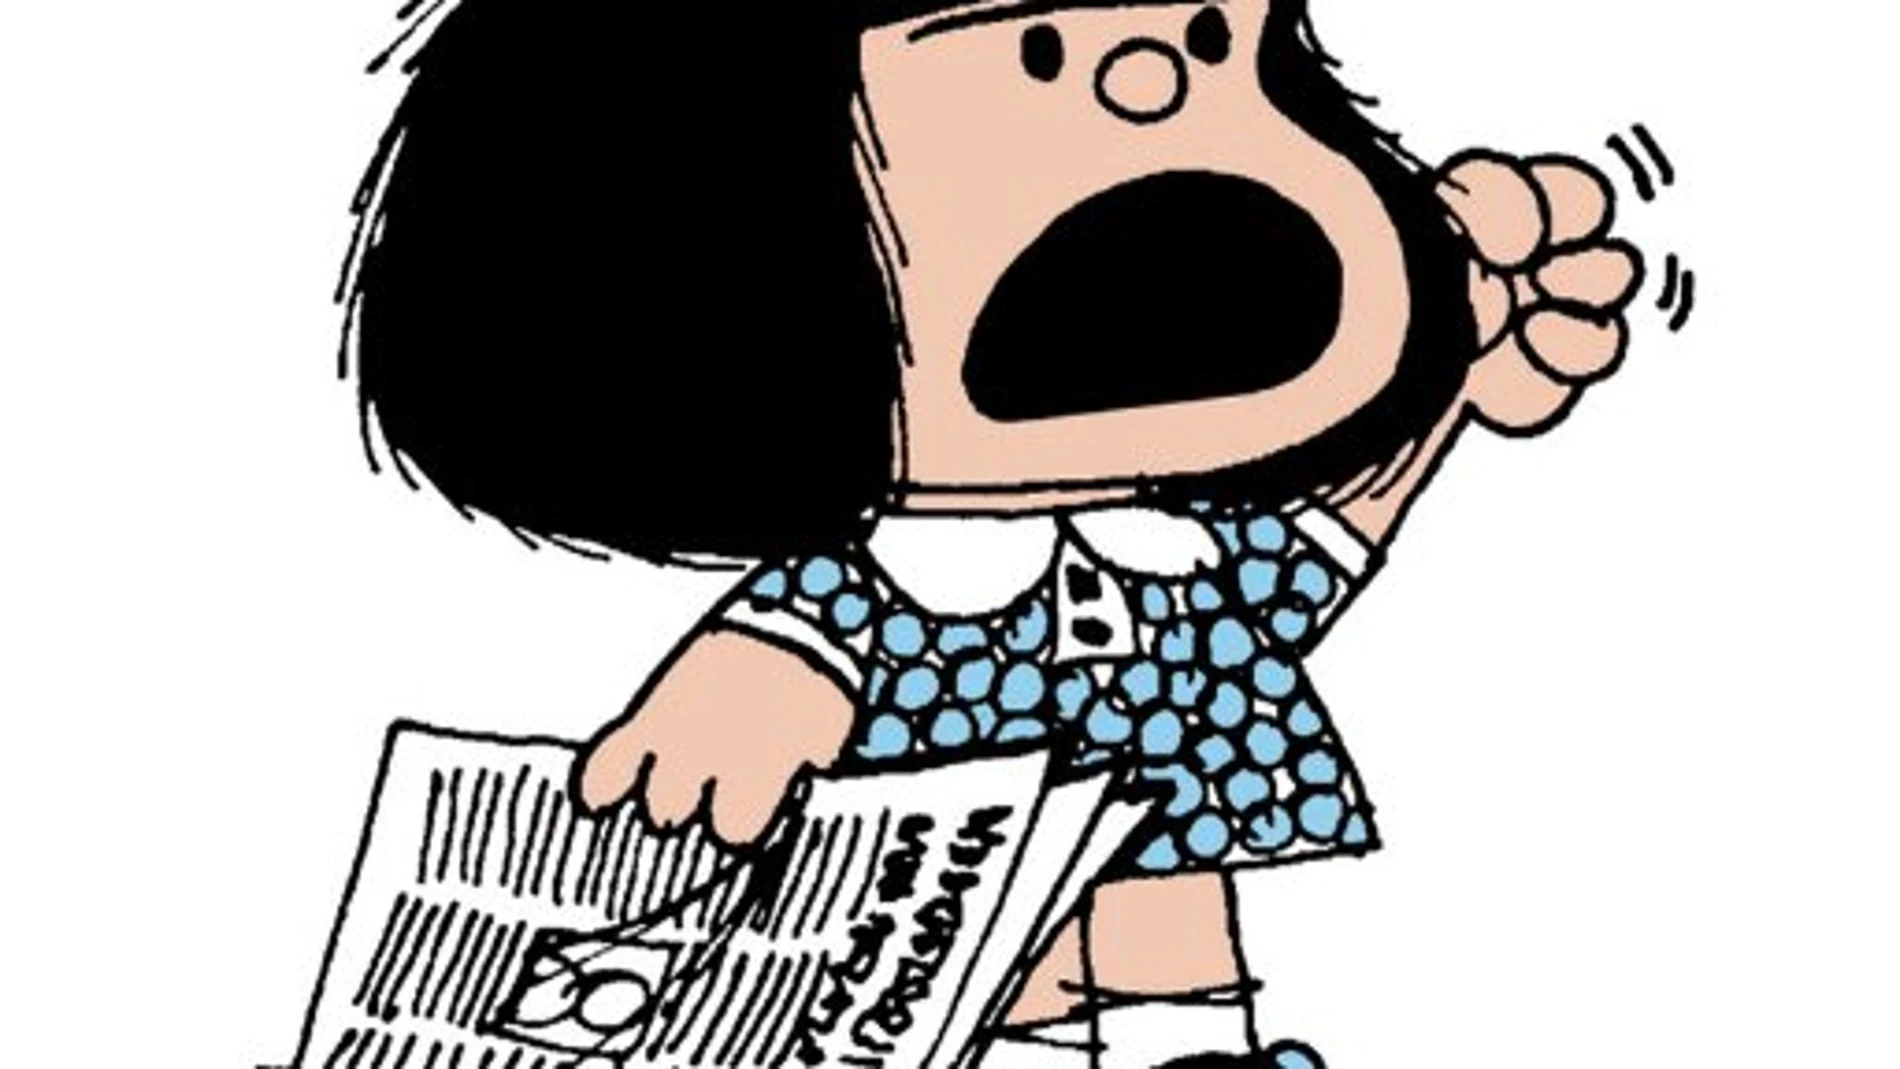 El nombre de "Mafalda" está inspirado en el bebé que aparece en la novela "Dar la cara", de David Viñas